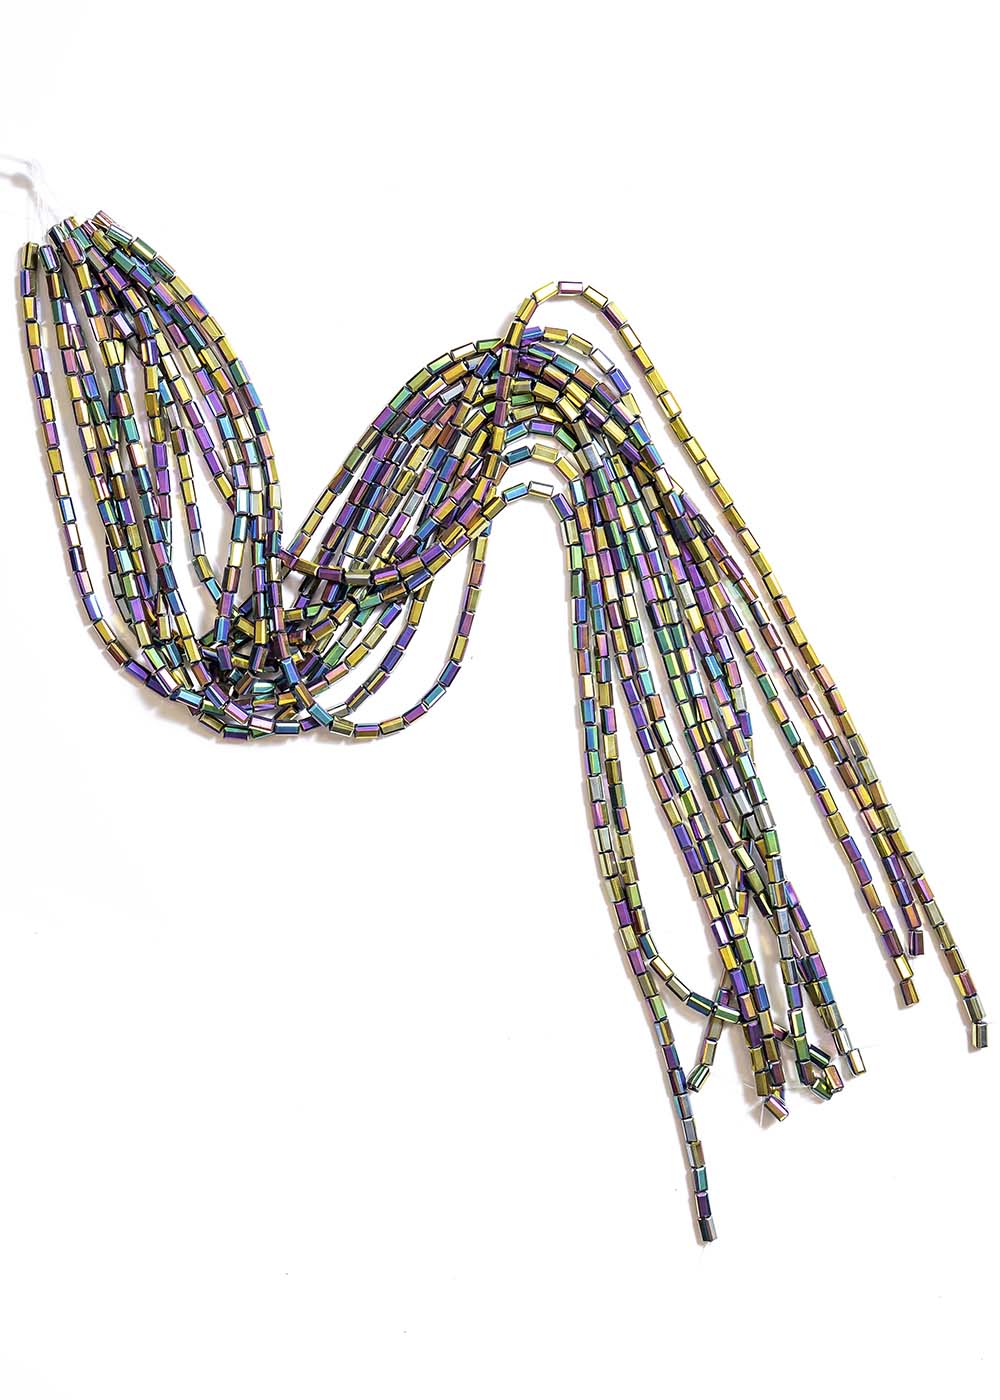 Rectangular beads